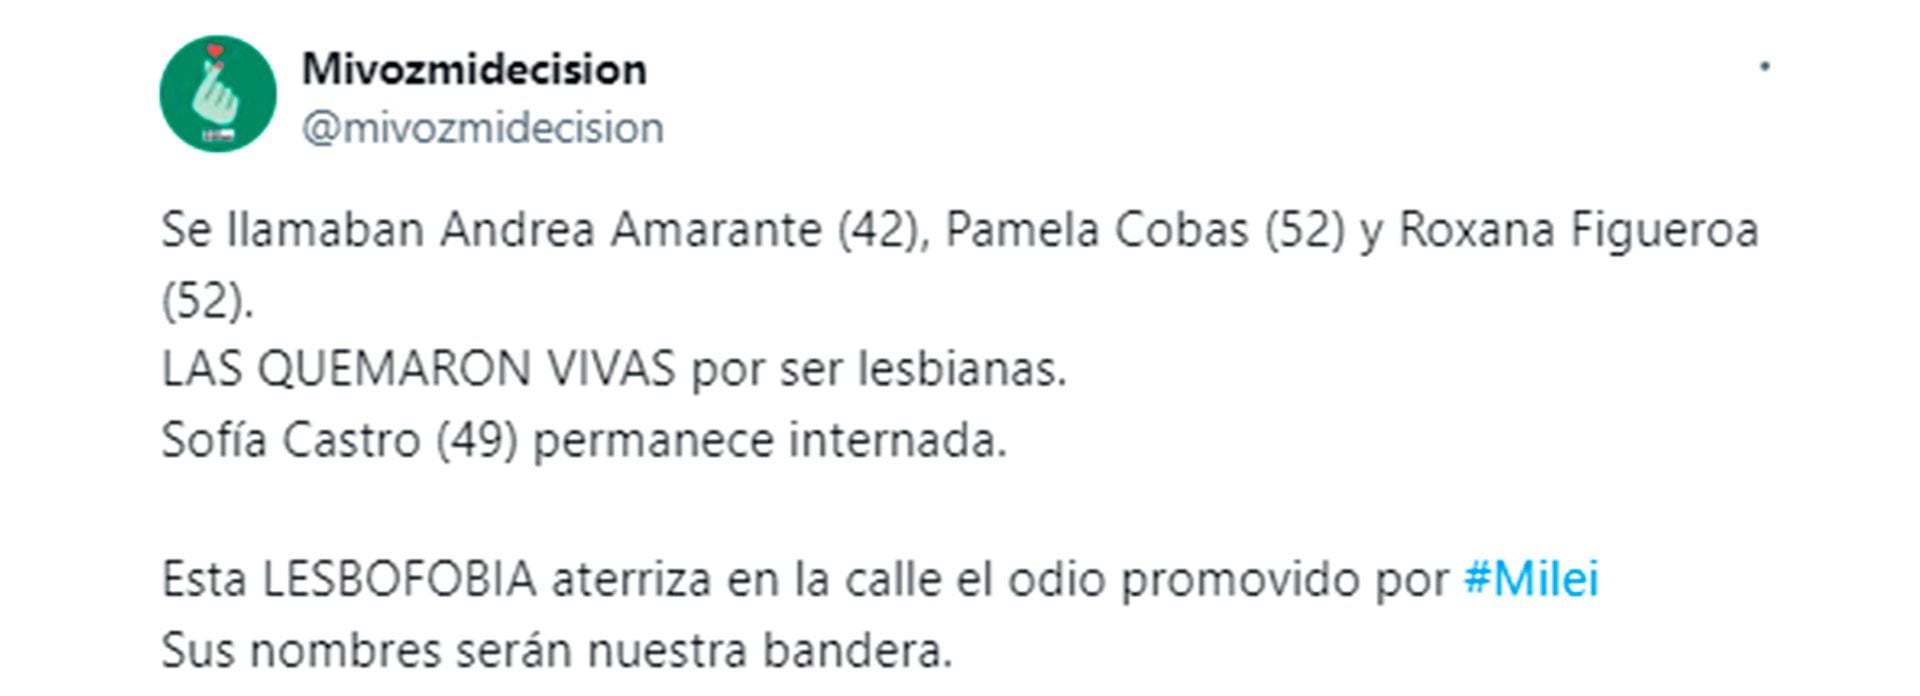 La campaña europea "Mi voz, mi decisión" repudió el lesbicidio de Barracas y hubo vigilia frente a la Embajada Argentina en Madrid